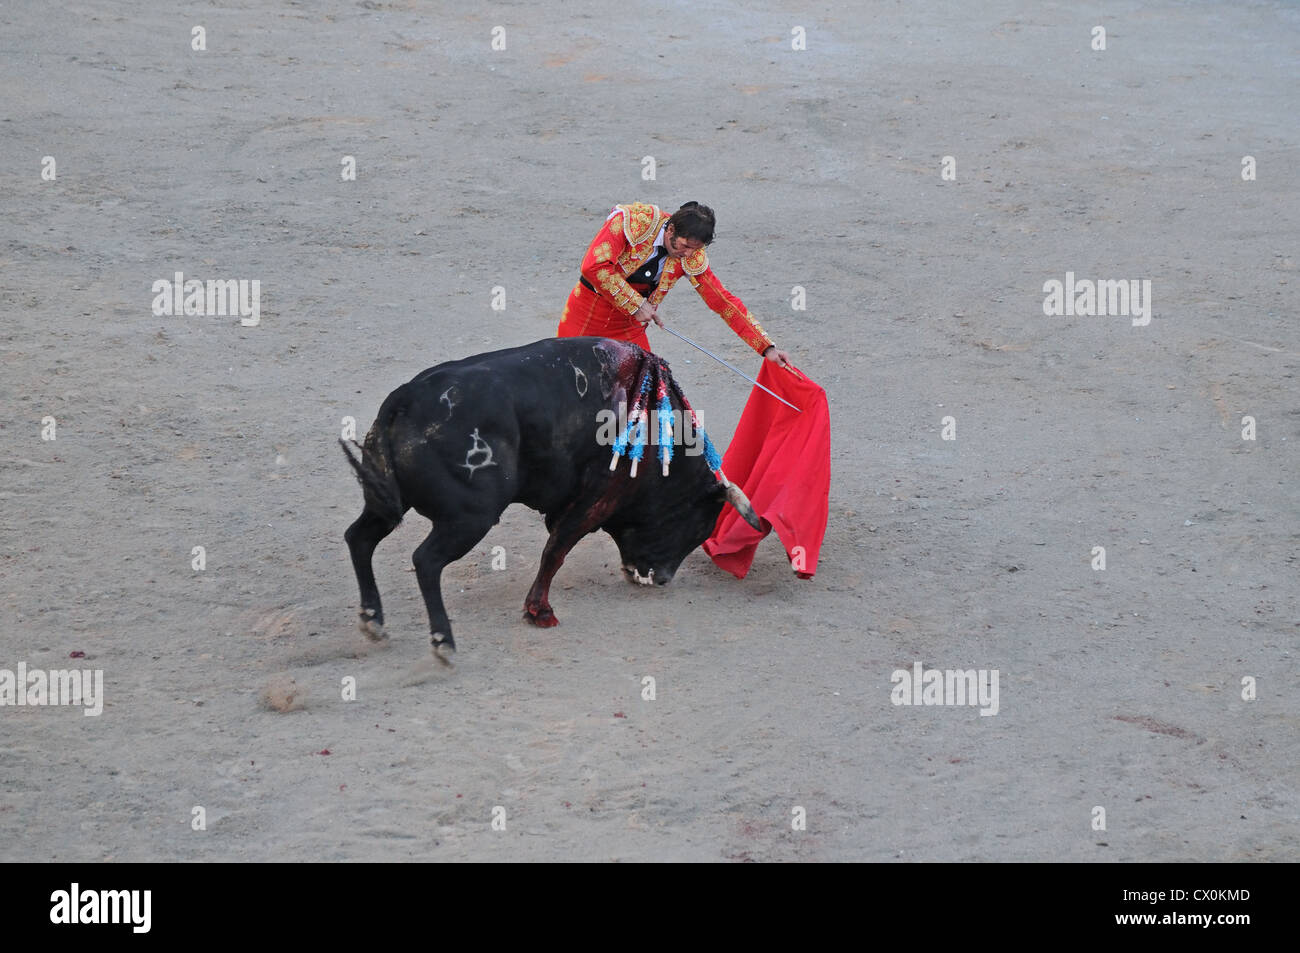 Matador mit Schwert und roten Umhang in der Nähe von Verwundeten schwarzen Stier Bull kämpfen Corrida in römischen Arena-Arles-Frankreich Stockfoto